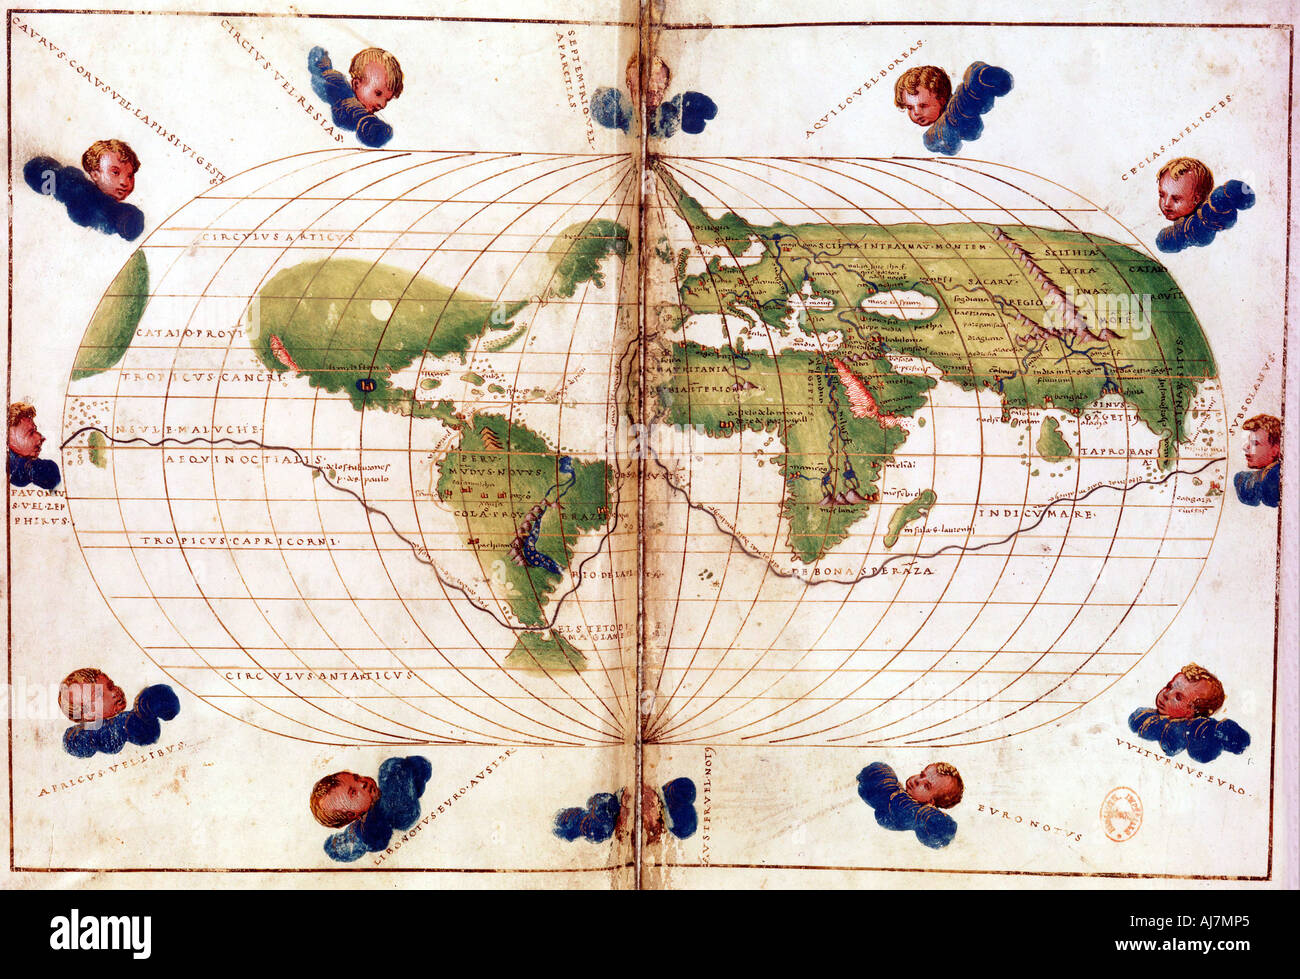 Site de Magellan's tour du monde, 1519-1521. Artiste : Inconnu Banque D'Images